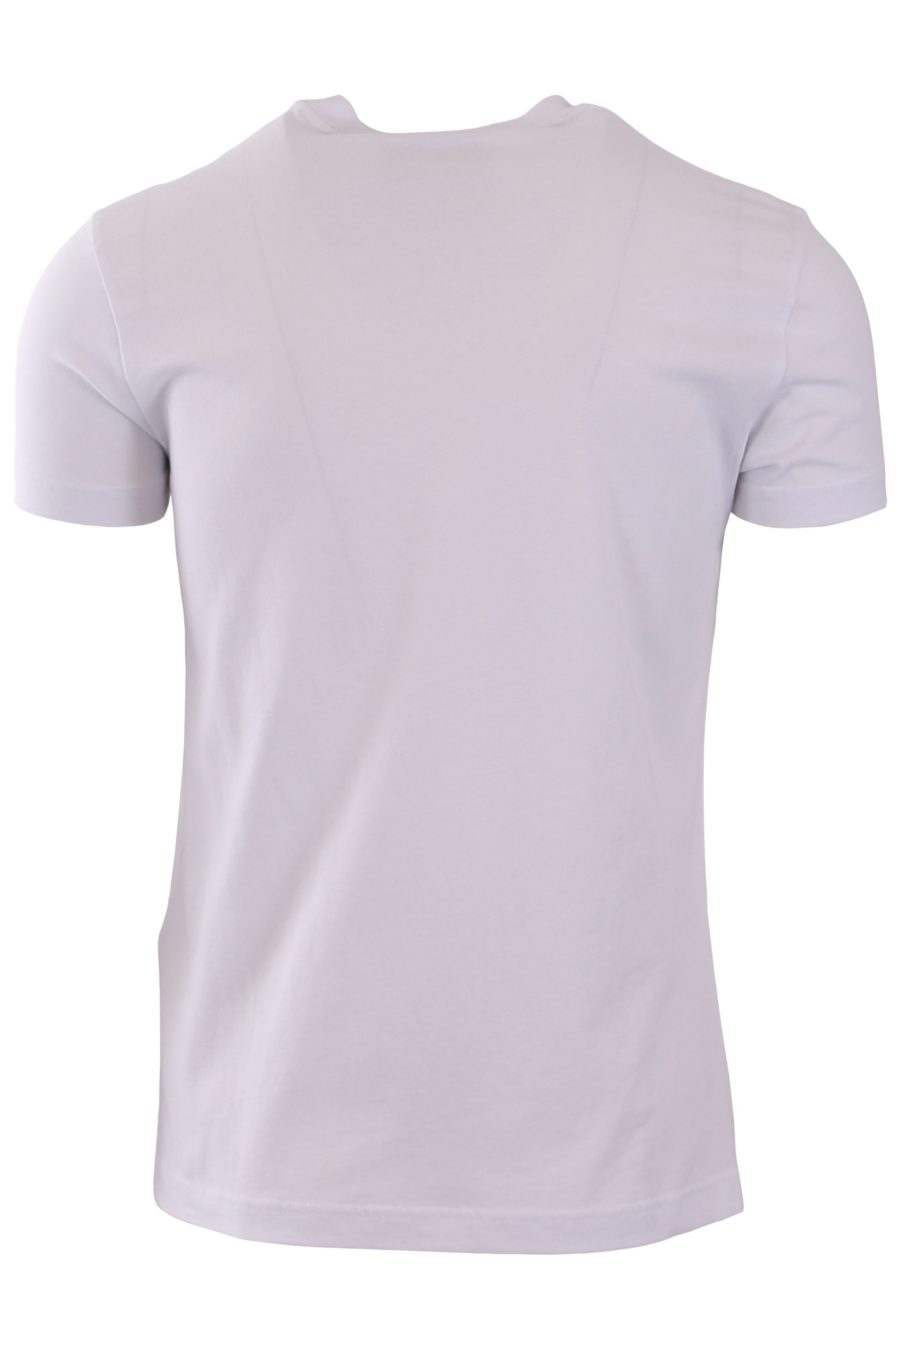 Versace Jeans Couture T-shirt blanc avec logo écrit en or - e198b677343c6a09969fd6e32b0d090bfc70916c